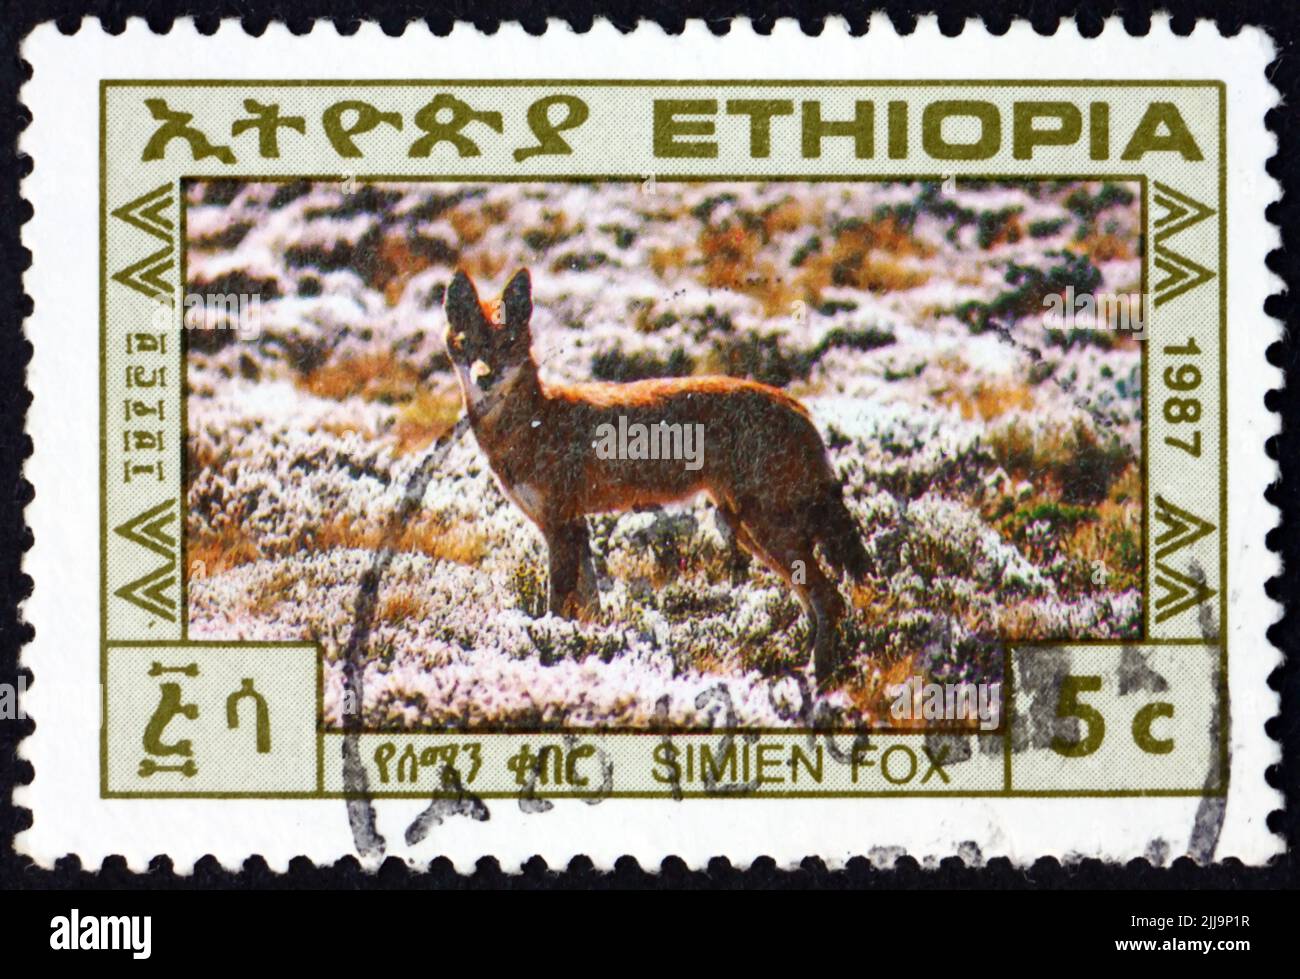 ETIOPIA - CIRCA 1987: Un francobollo stampato in Etiopia mostra Simien fox, canis simiensis, è un canino originario delle Highlands etiopiche, circa 1987 Foto Stock